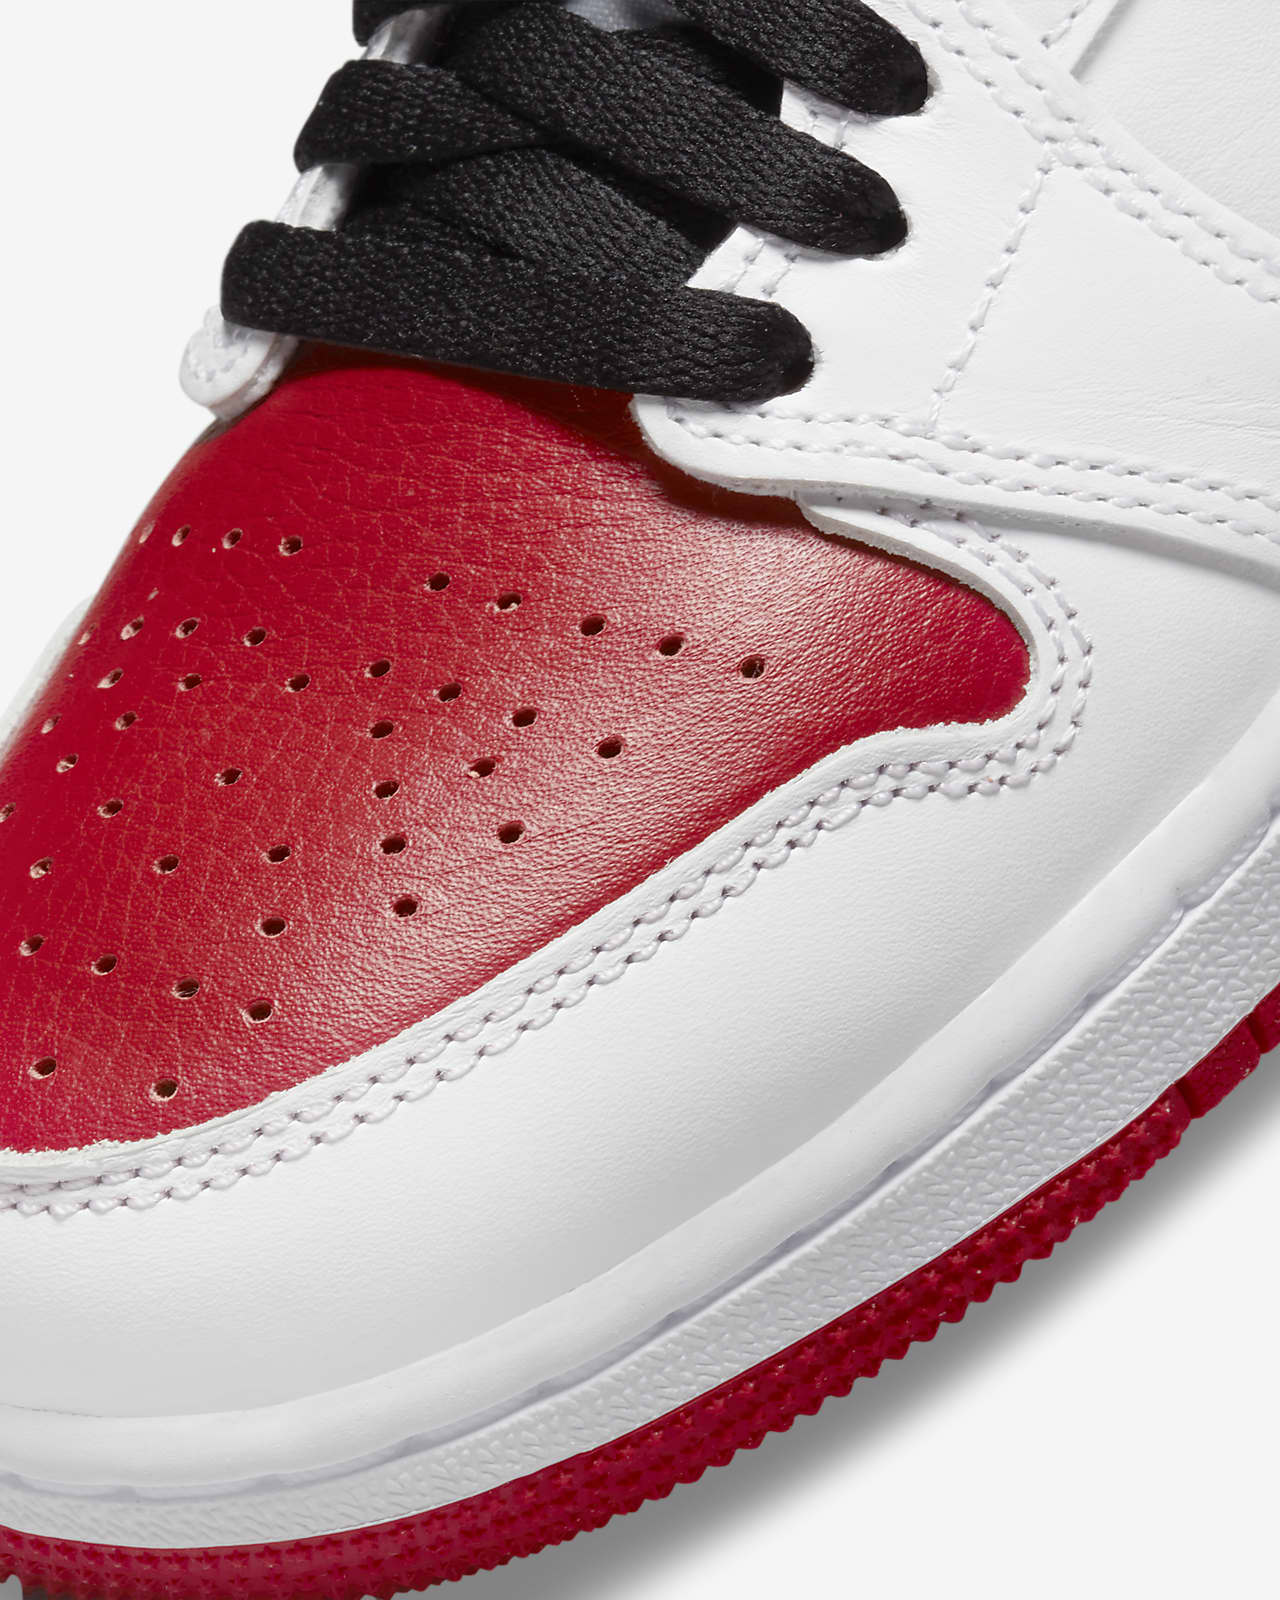 Air Jordan 1 Retro High OG Boys' Shoe. Nike.com